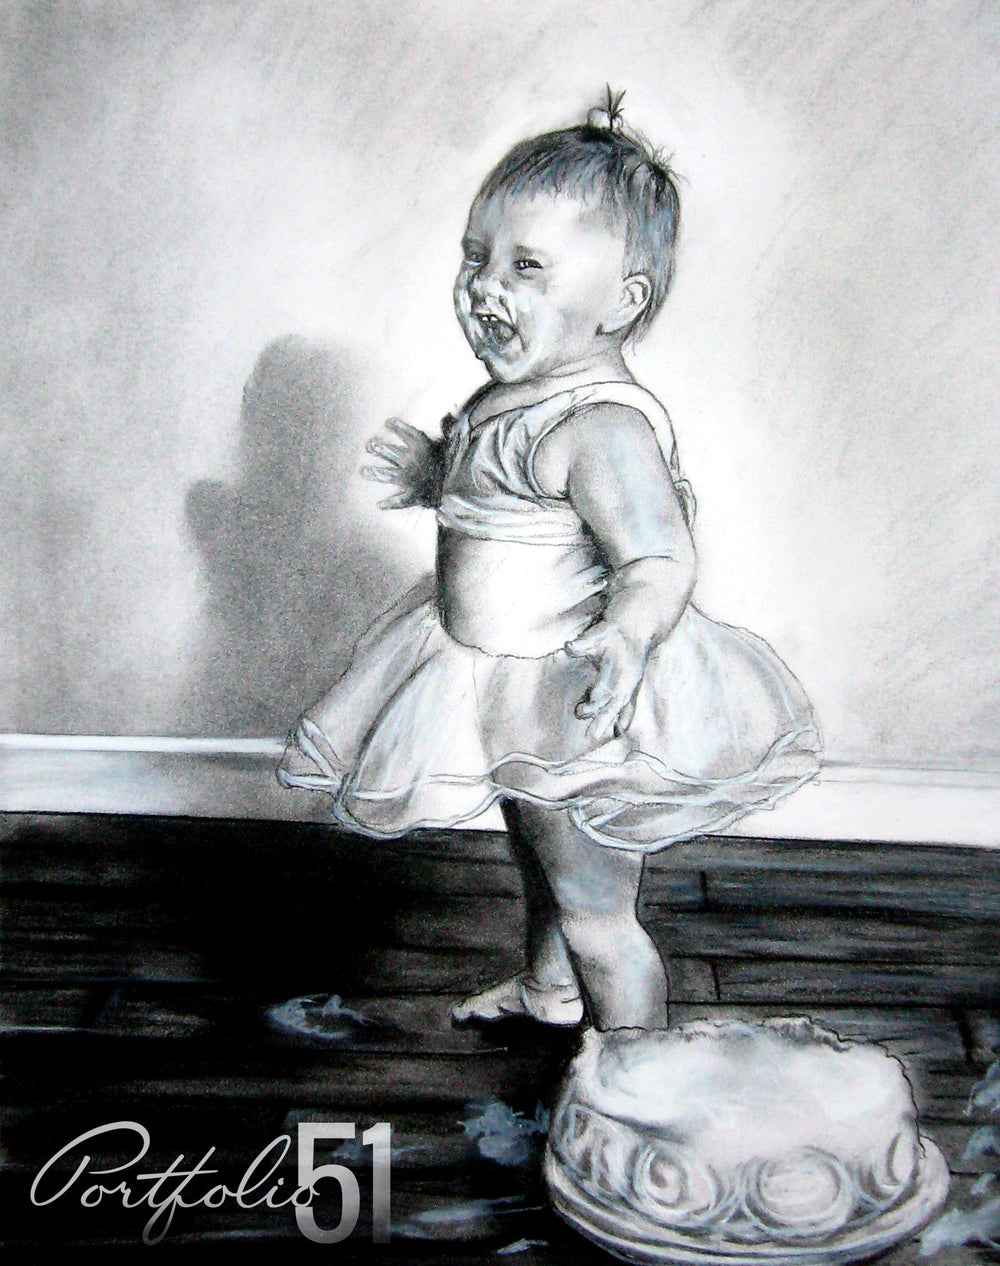 Portfolio 51 Baby Birthday Drawing